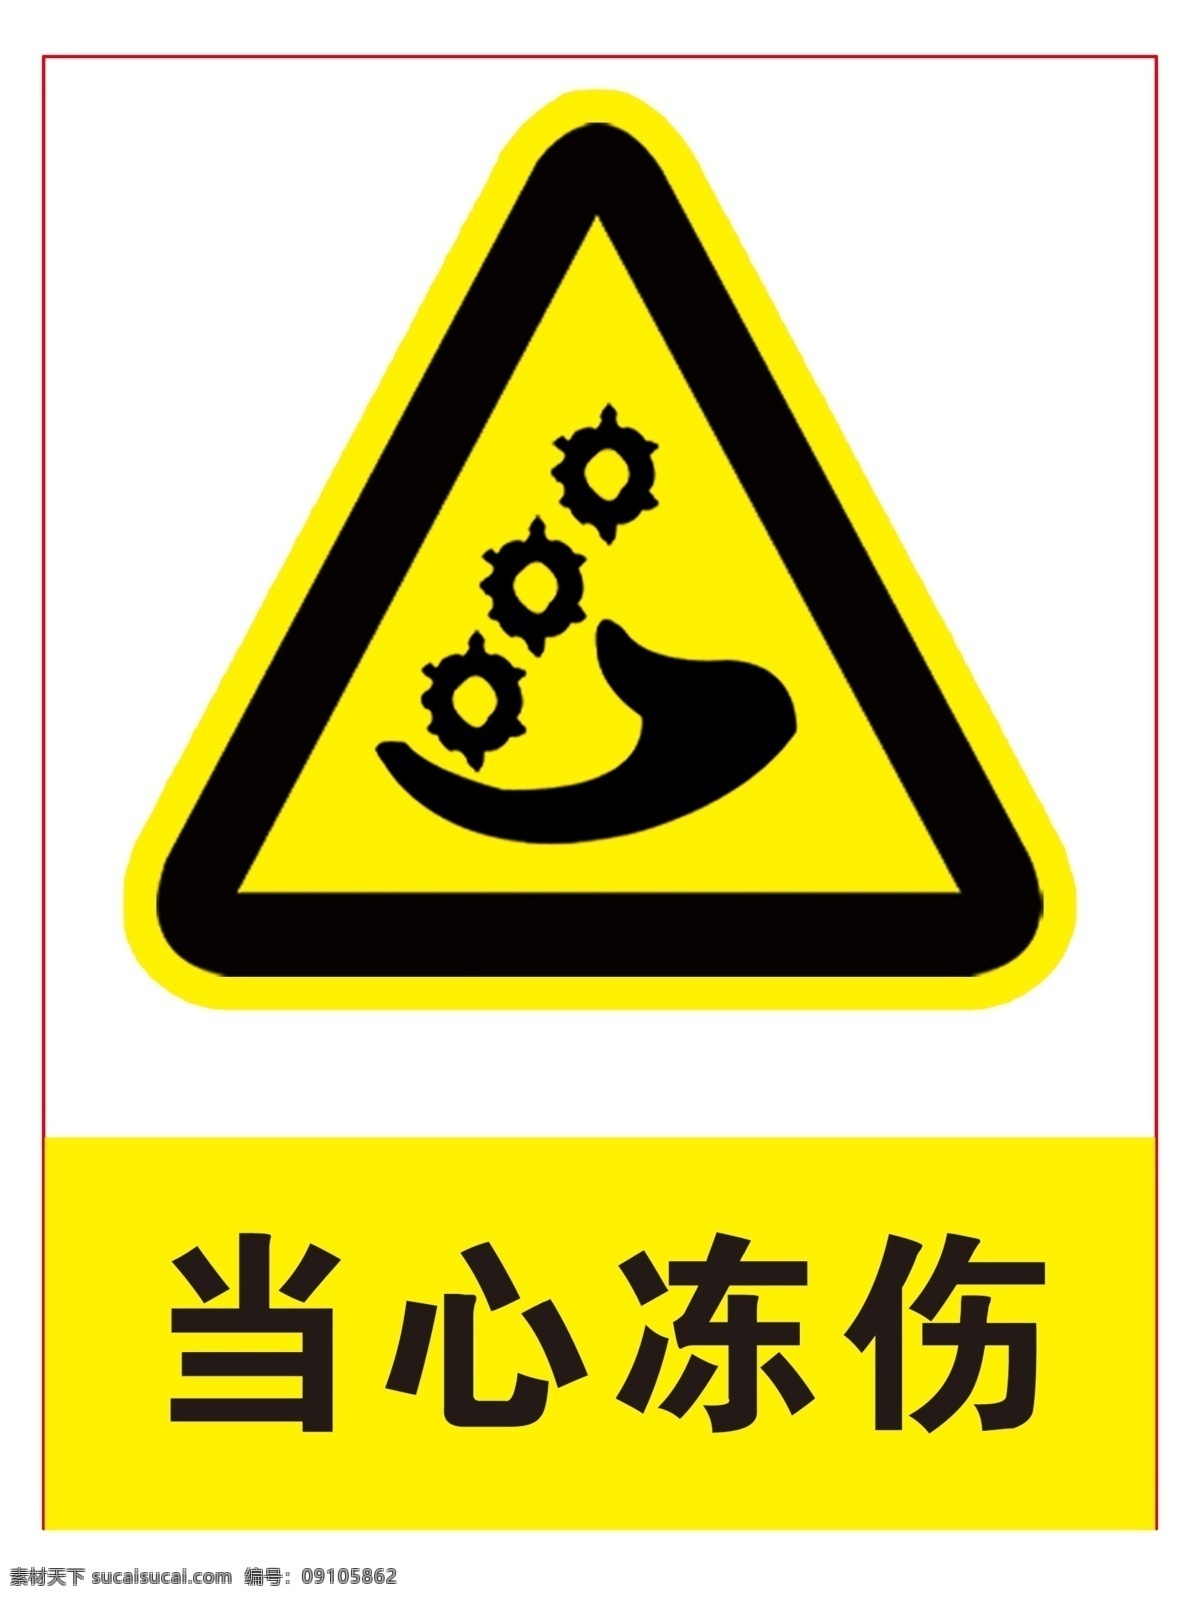 当心冻伤 当心标志 当心 当心炸提示 黄色警告标志 标志图标 公共标识标志